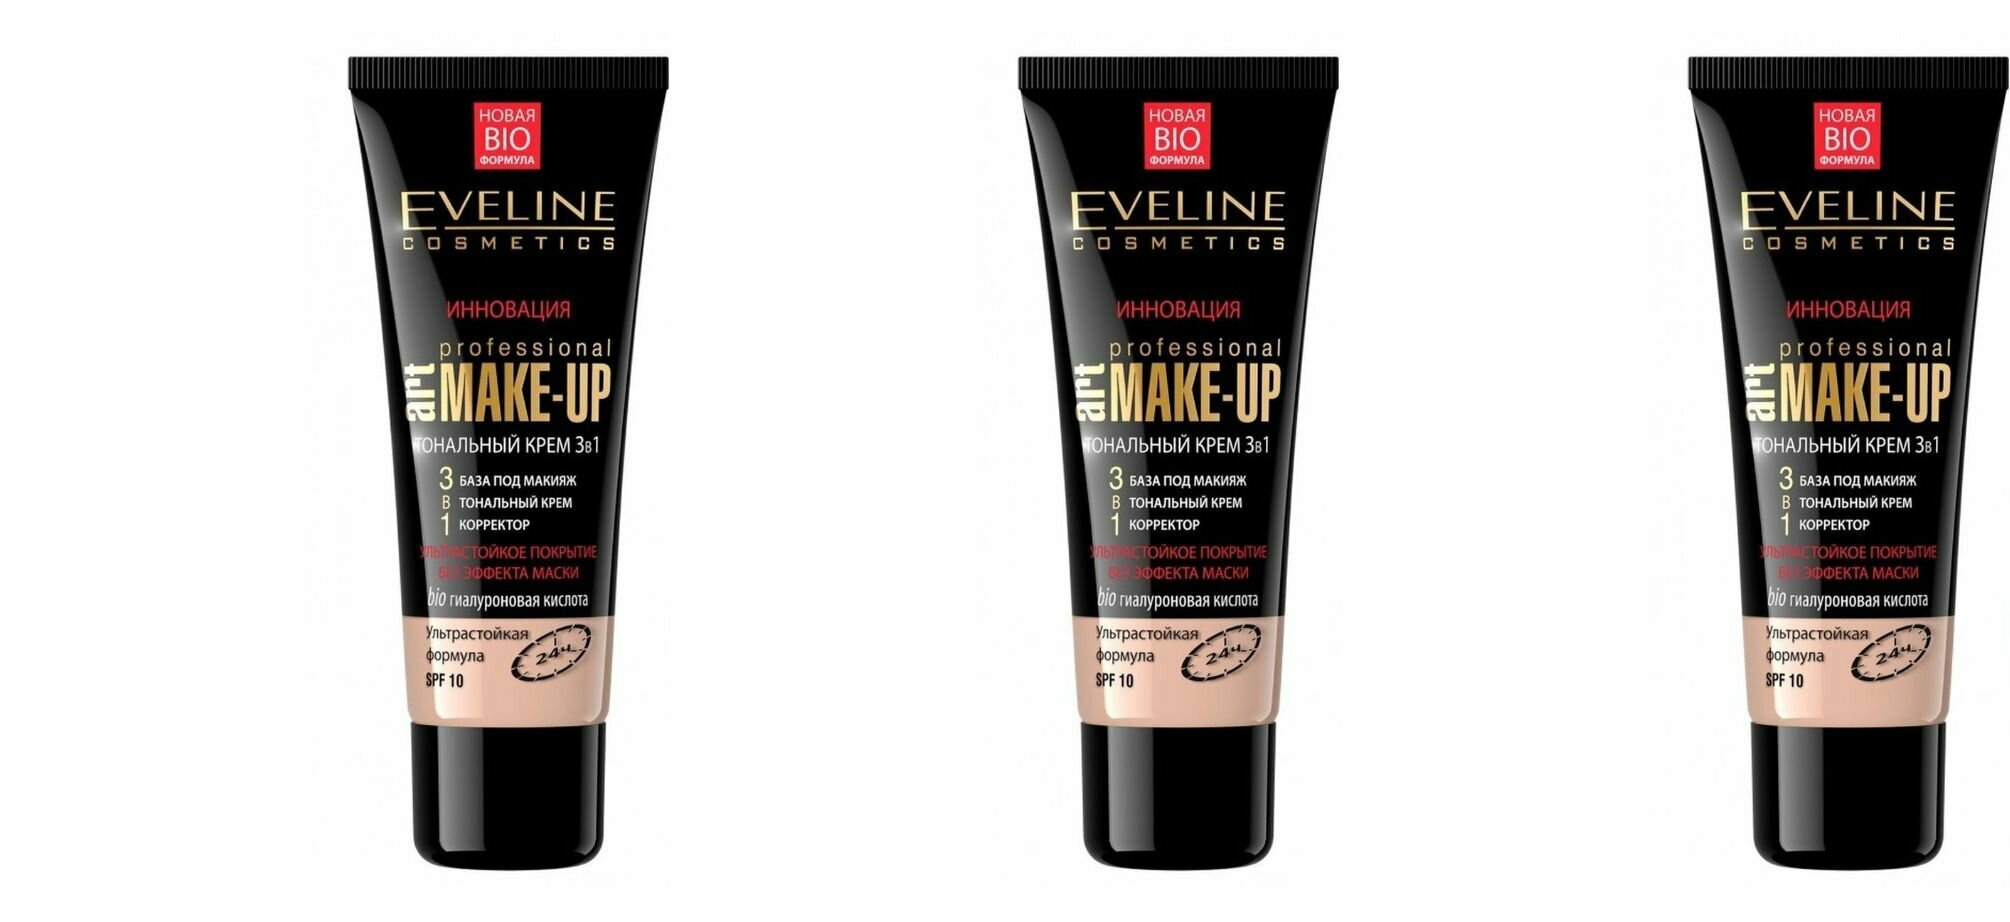 Eveline Cosmetics Тональный крем светлый бежевый Art Professional Make-up,30 мл,3 шт